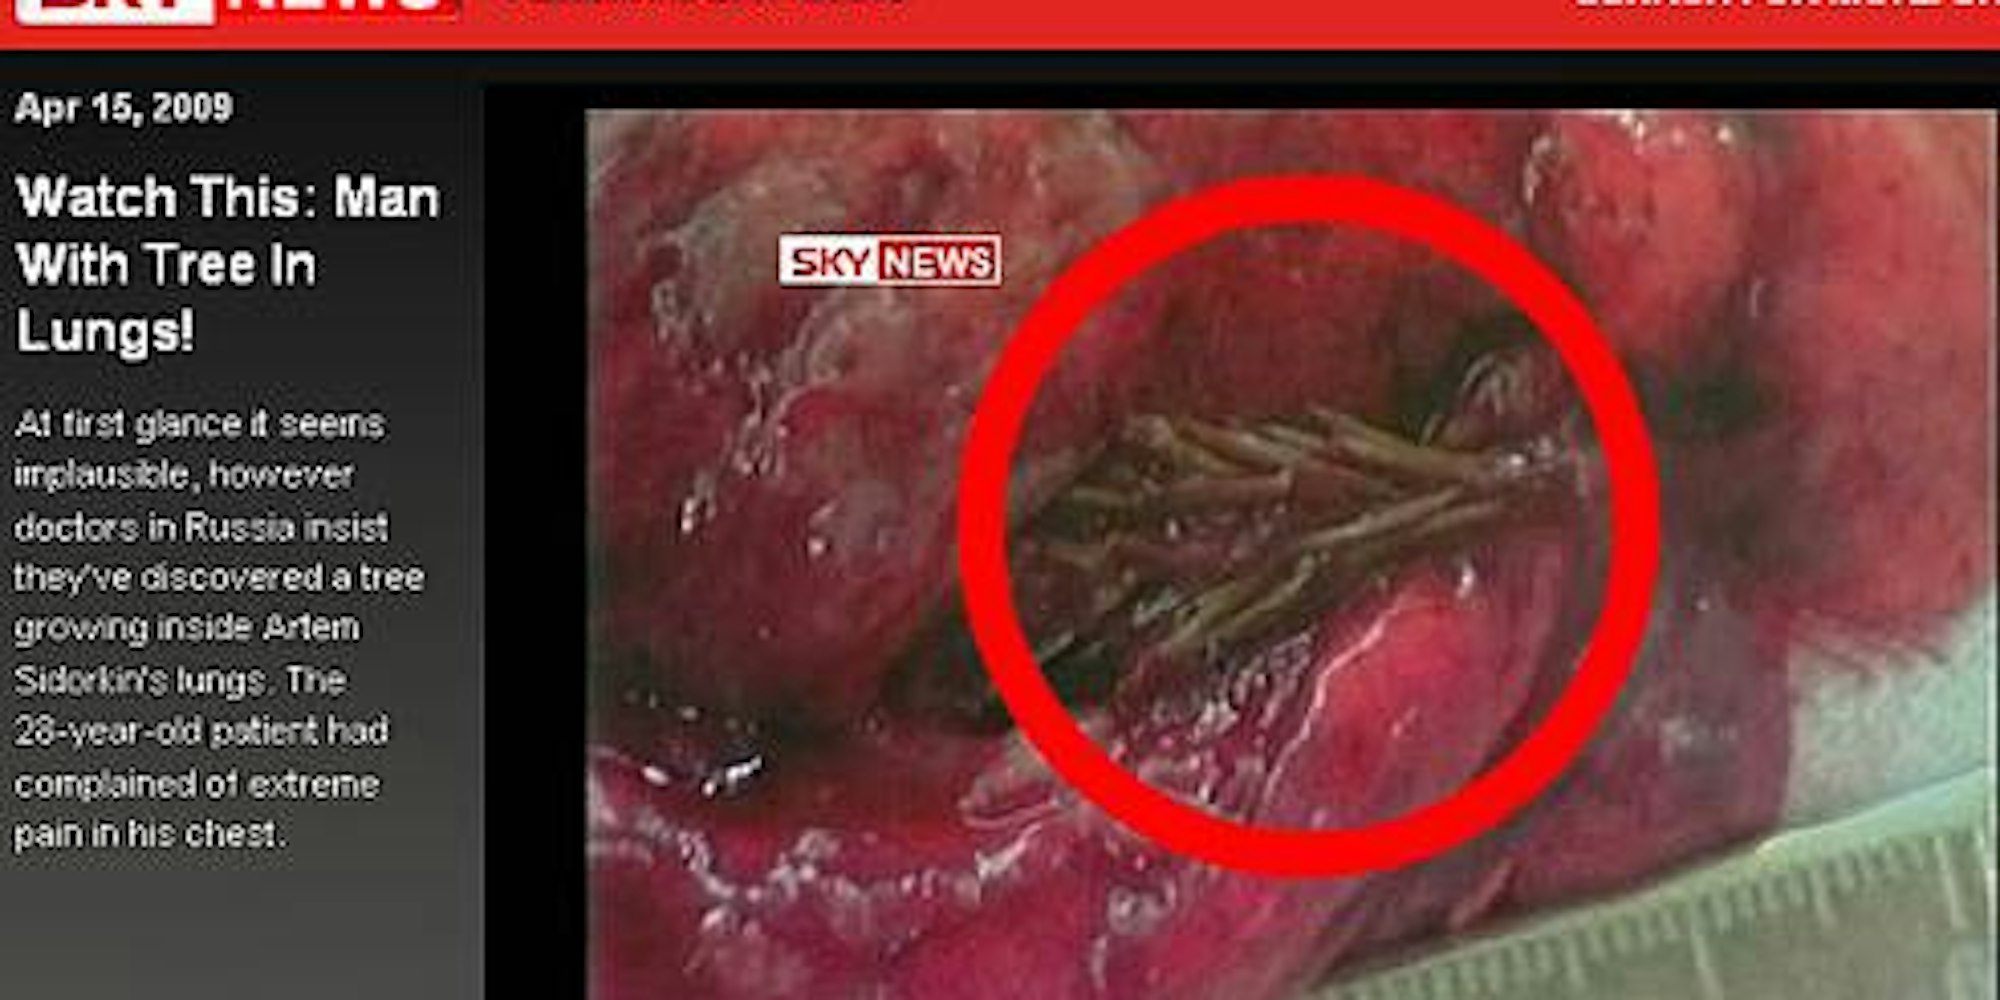 Sky News zeigt ein Video: Diese kleine Tanne hatte es sich in der Lunge des Patienten gemütlich gemacht.